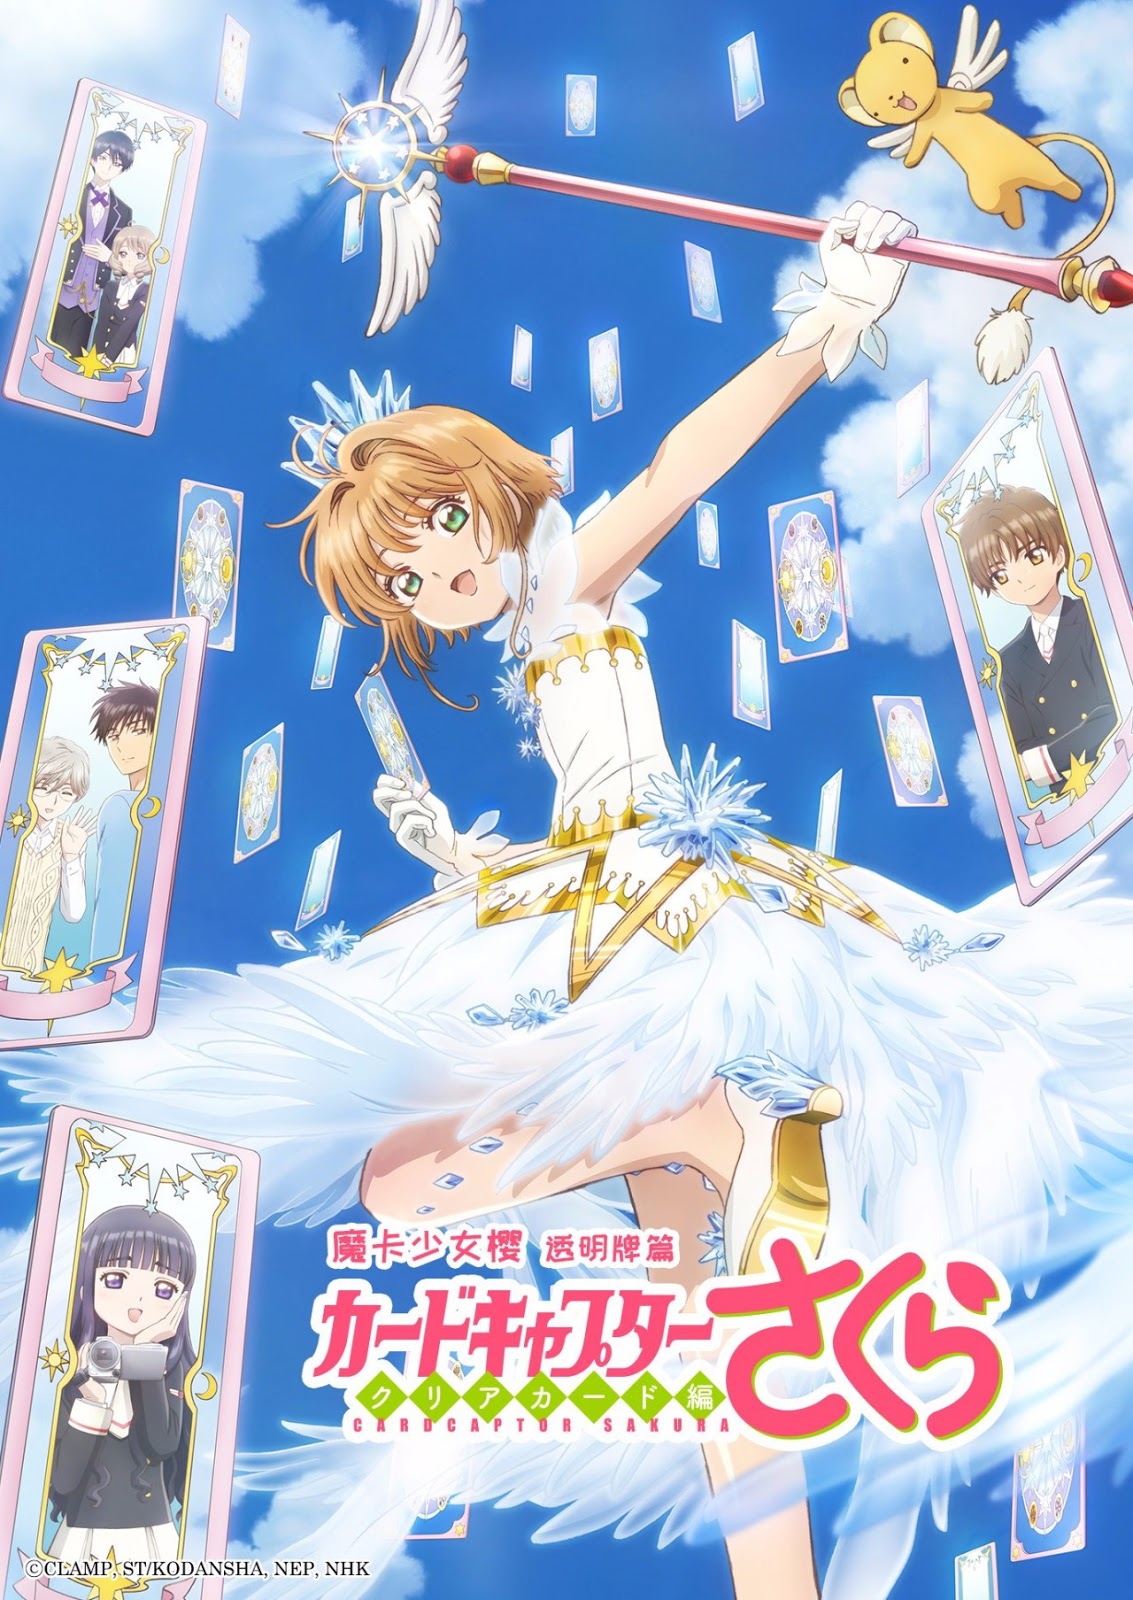 Banner Phim Sakura – Thủ Lĩnh Thẻ Bài 2: Thẻ Bài Trong Suốt (Cardcaptor Sakura: Clear Card-hen)